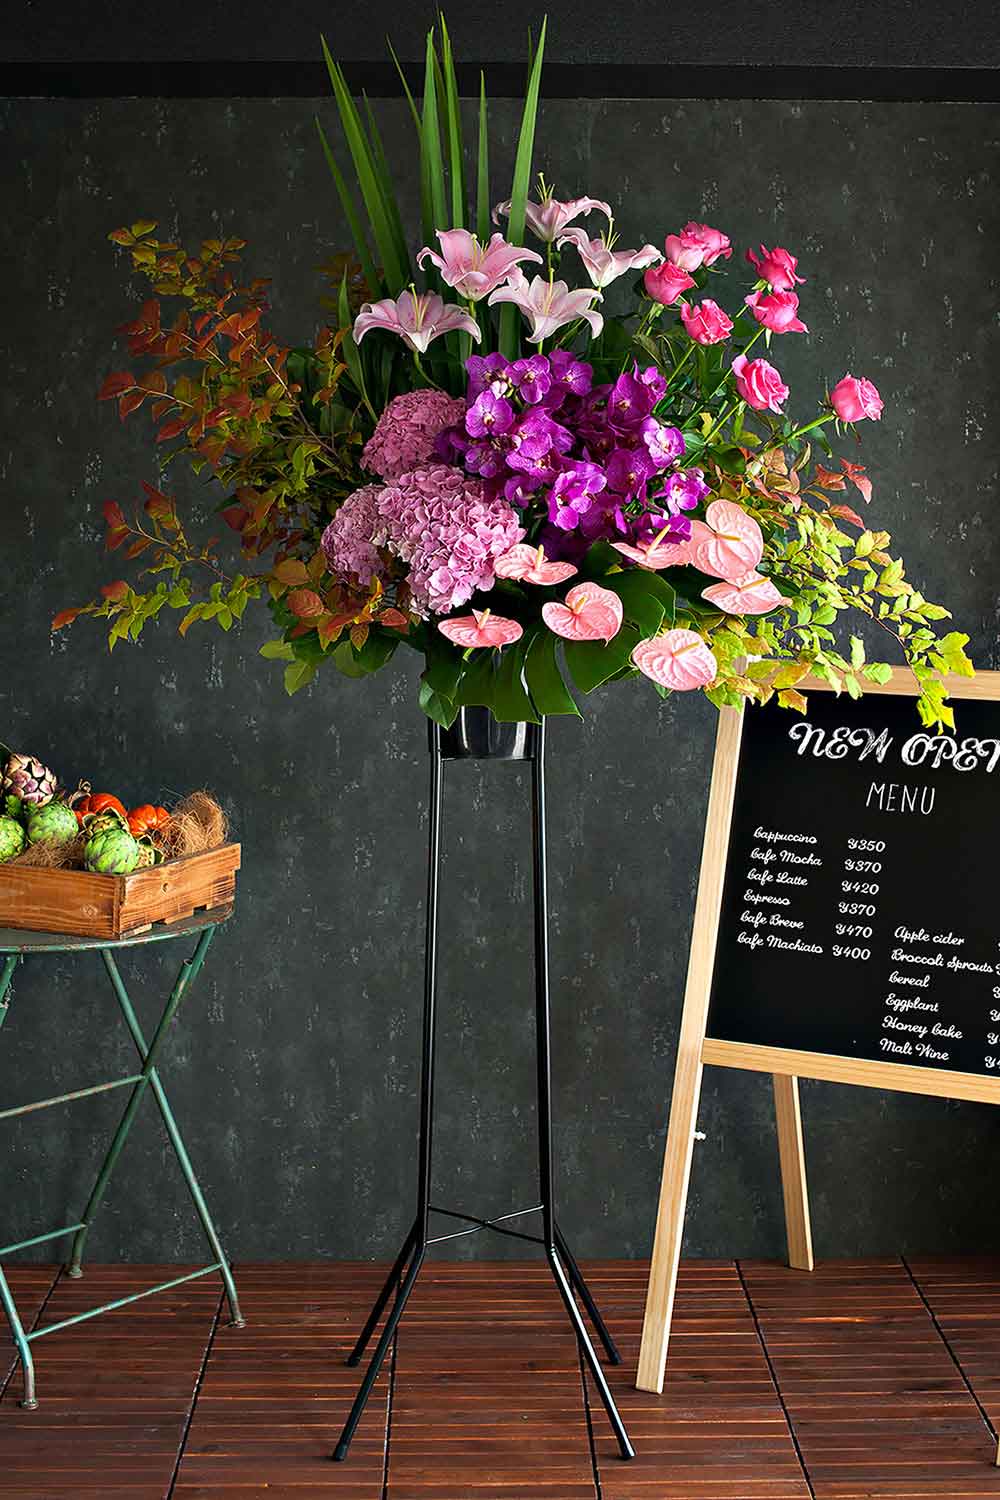 ピンク ピンク色のお花 お祝い お供えの花通販ギフトは送料無料の お花の窓口 へ